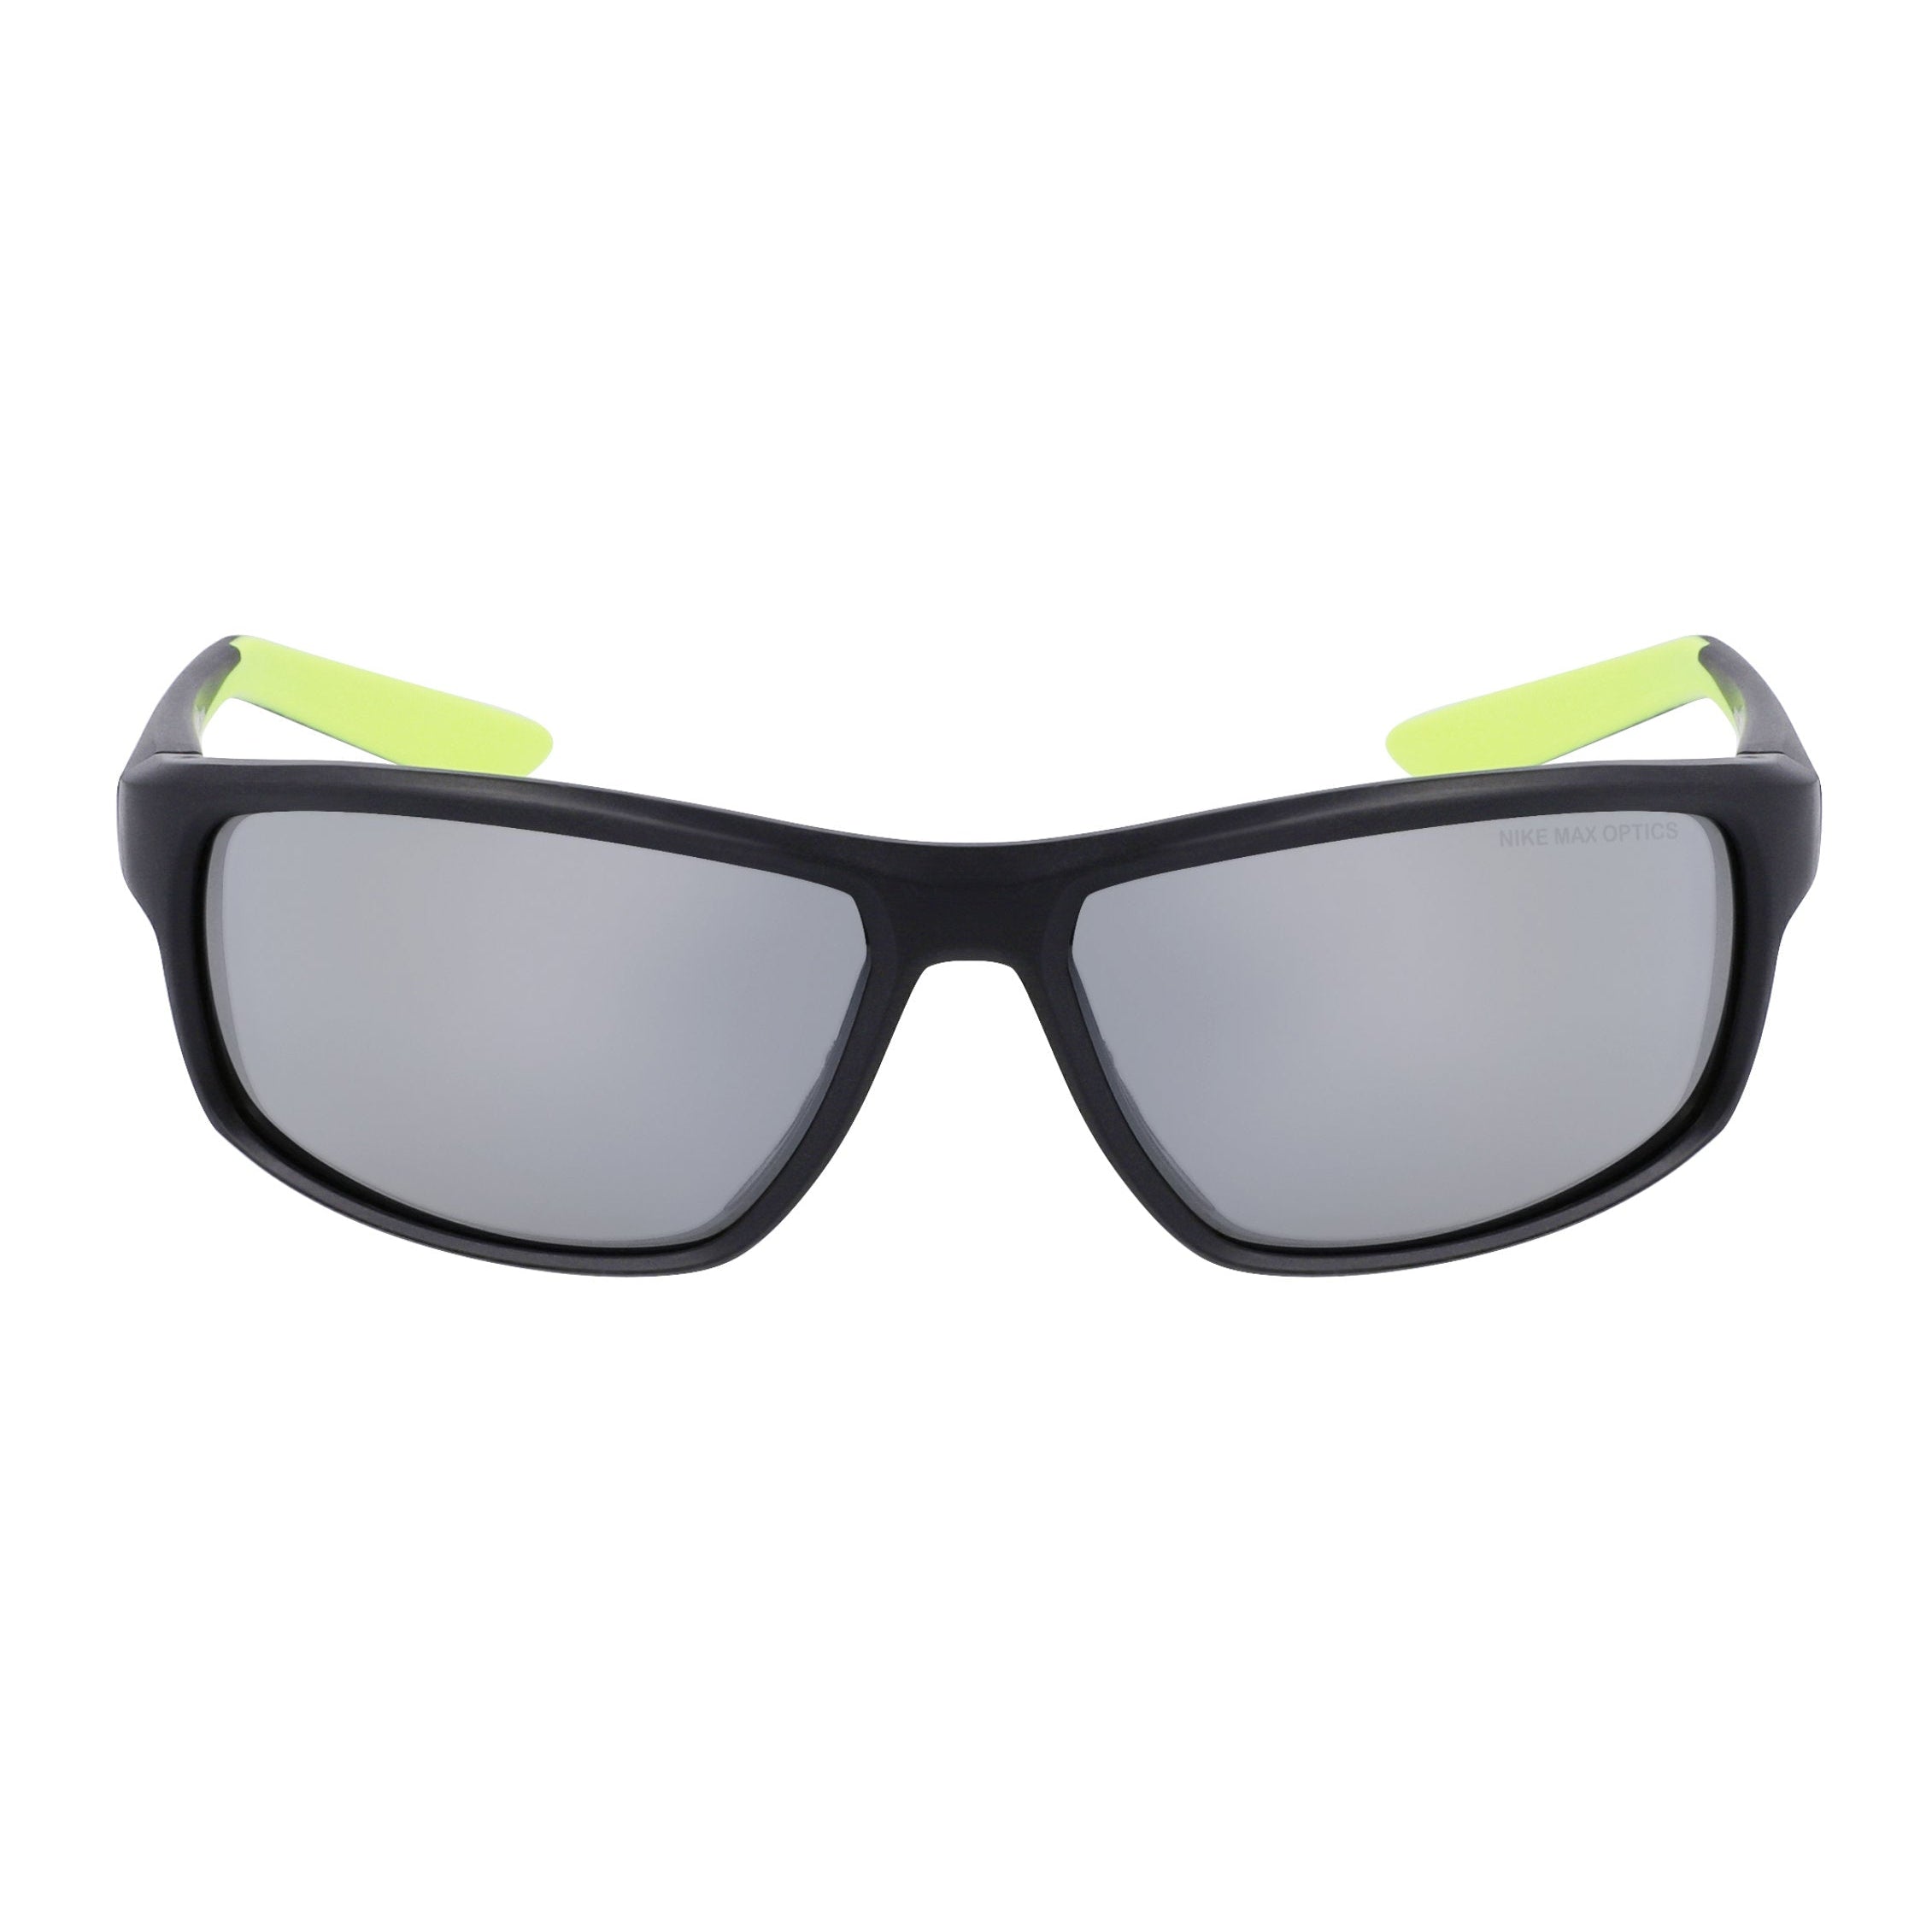 Nike Sunglasses Rabid 22 Black/Silver Flash Lens